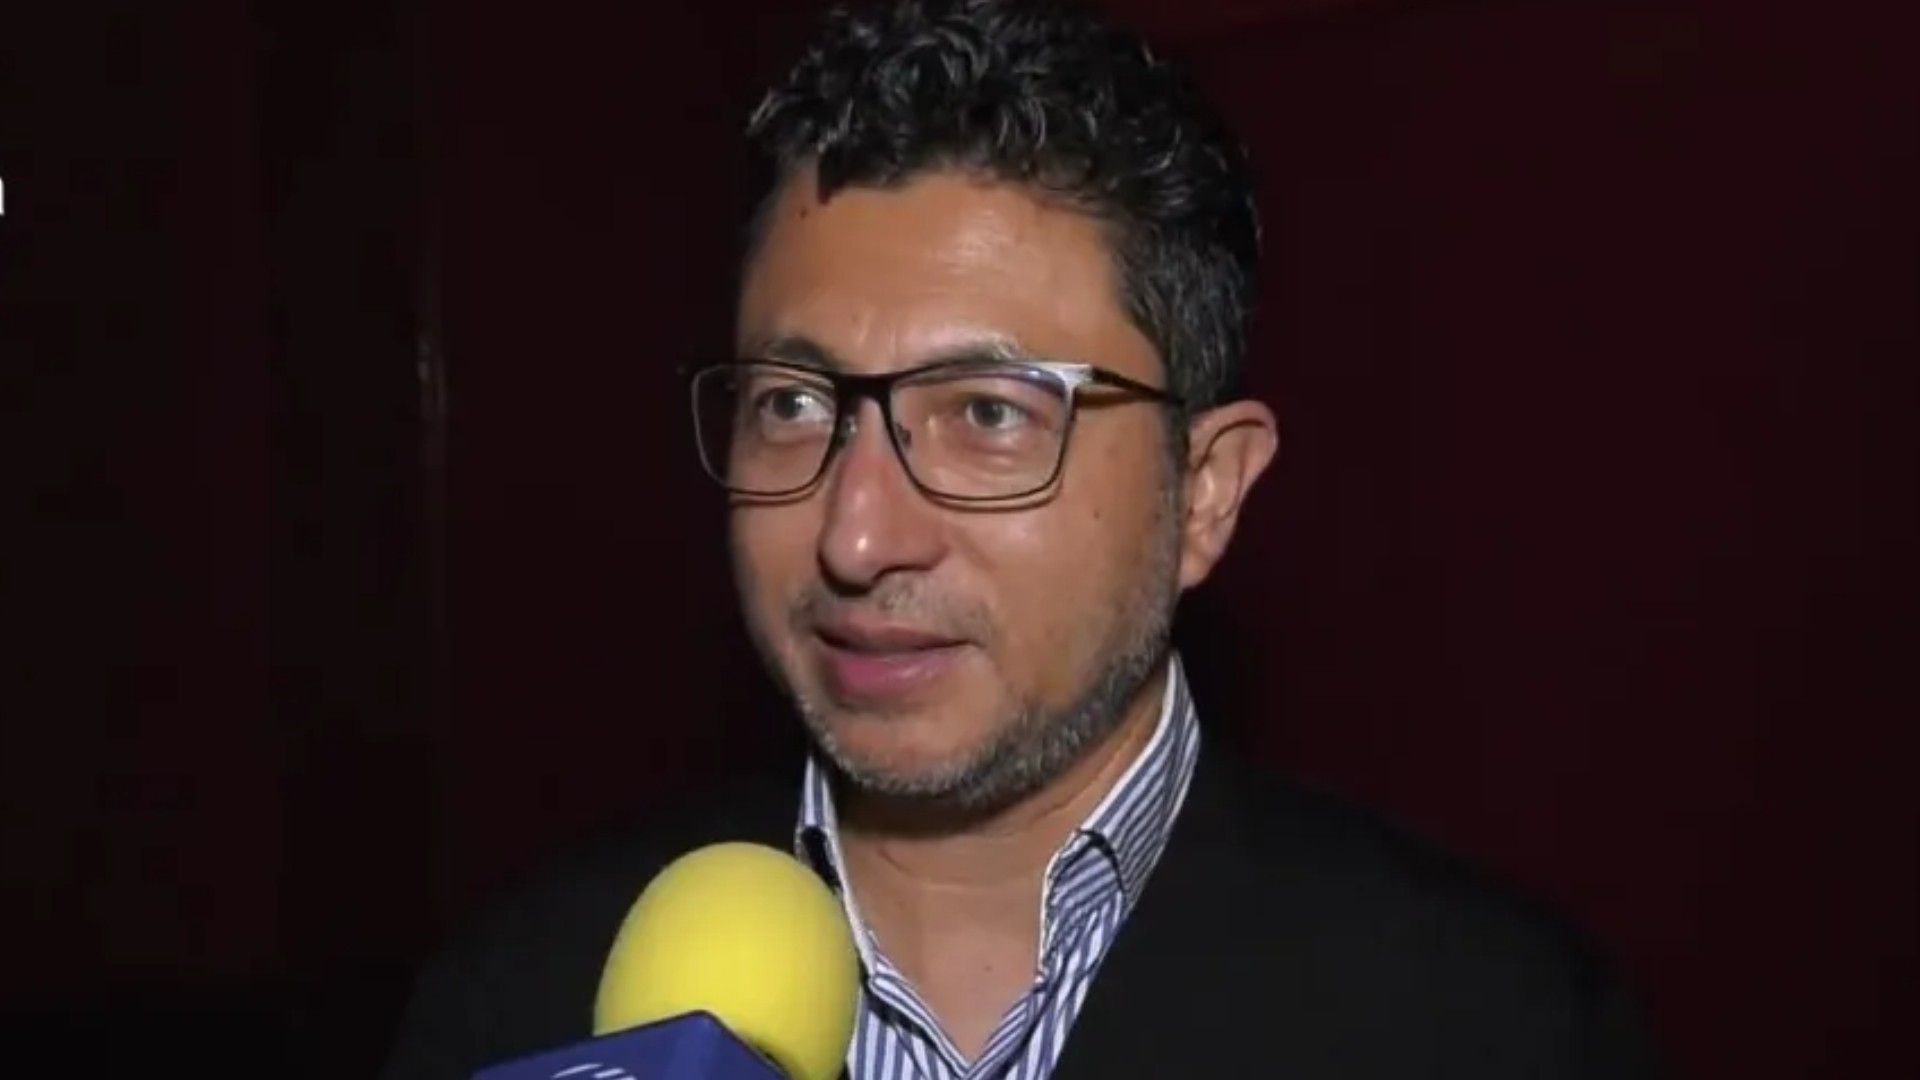 Carlos Tijerino Muere: Reportero de Televisa Espectáculos Fallece de Infarto Fulminante